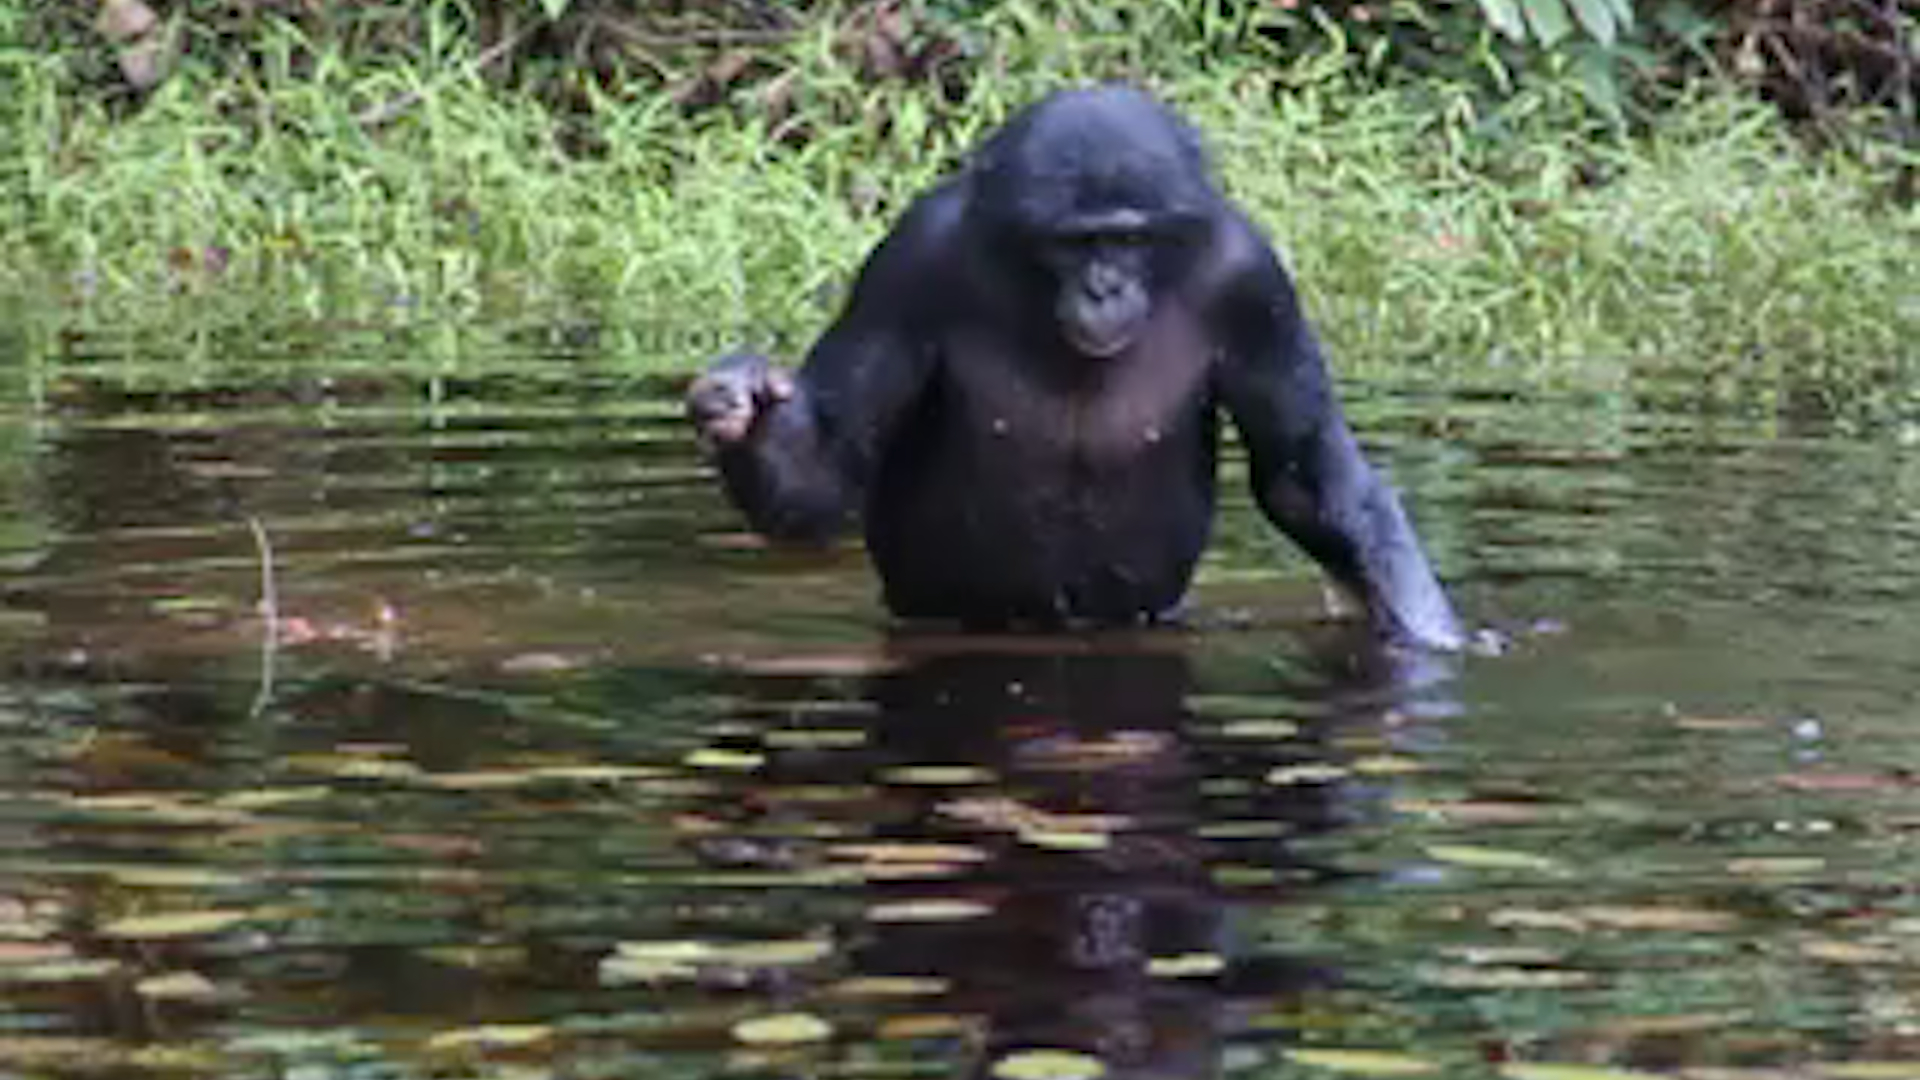 Wild bonobos 'peeping' while feeding